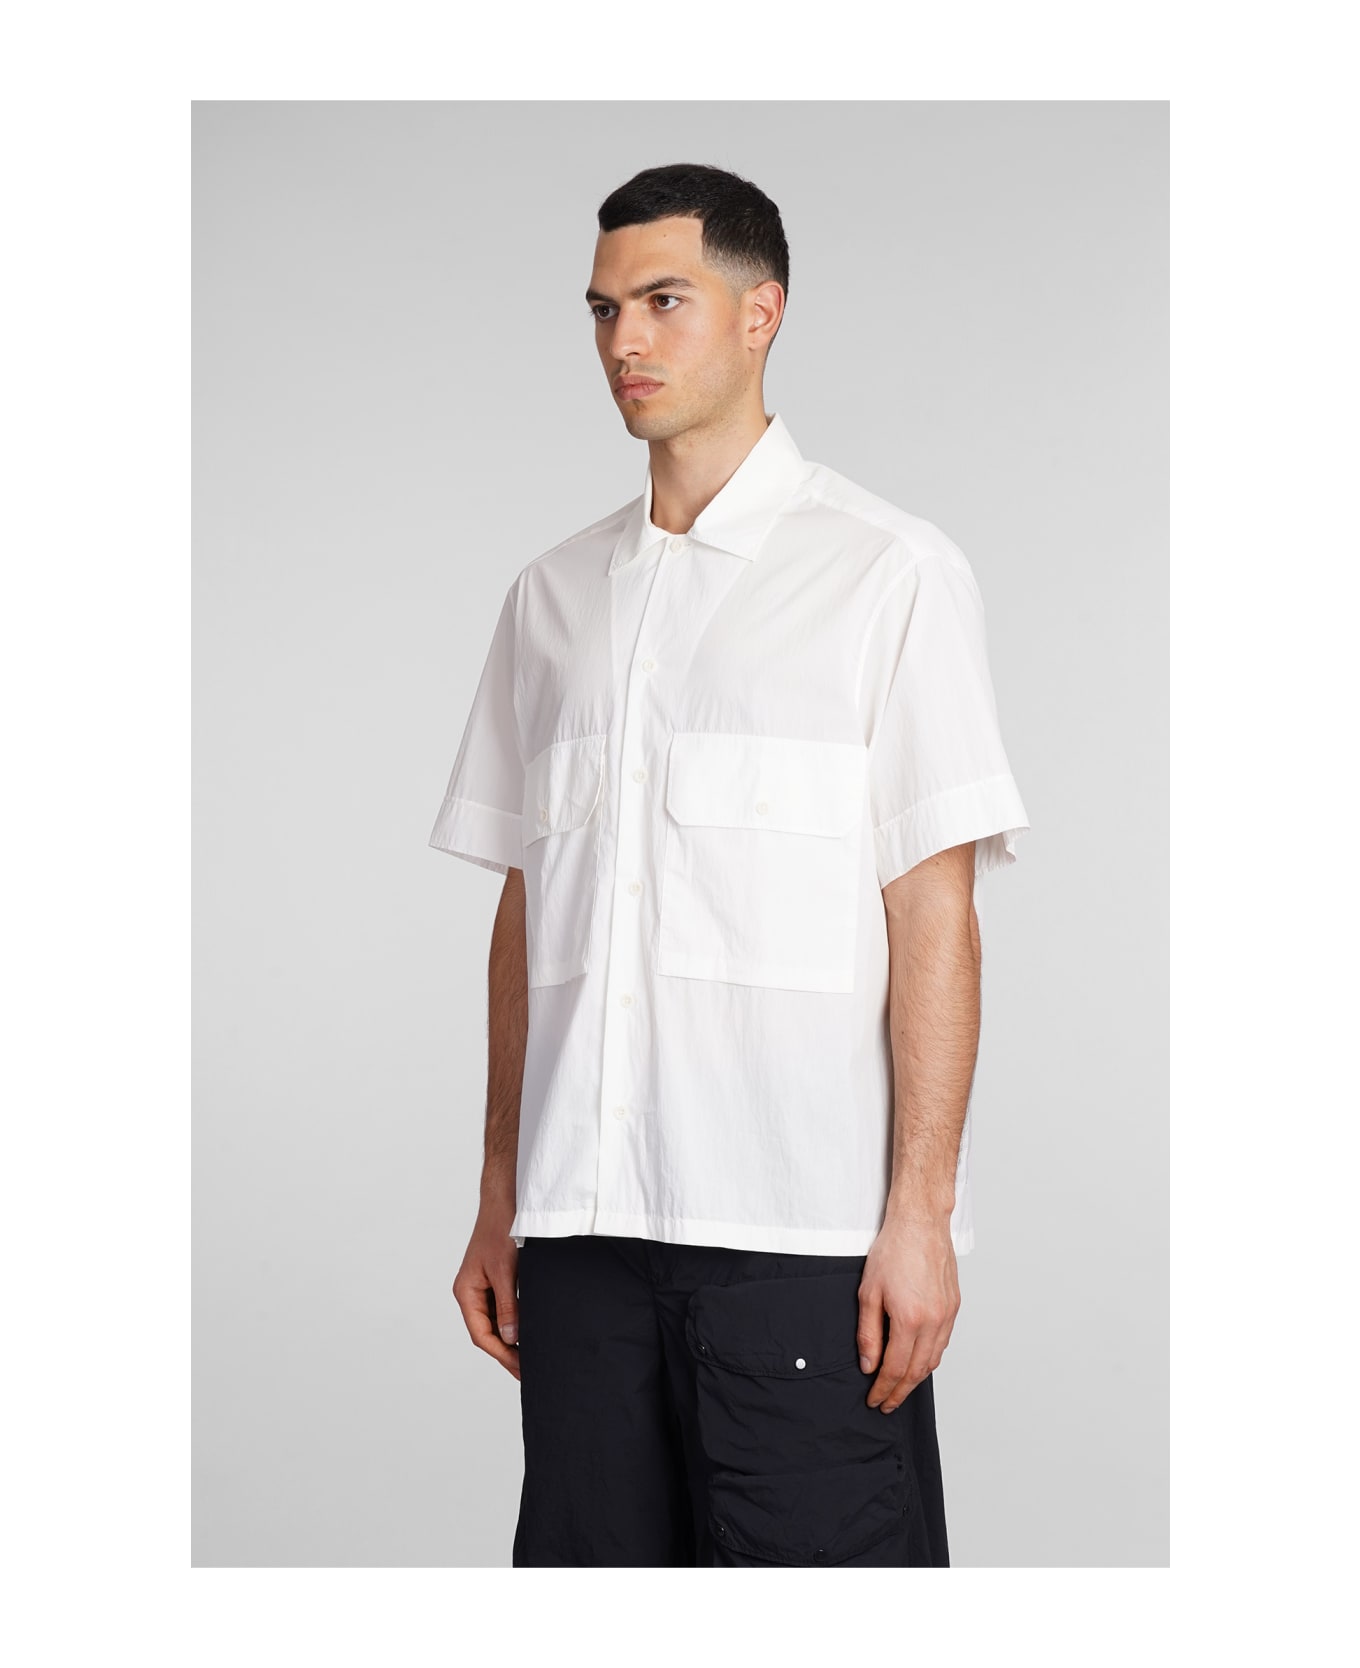 Ten C Shirt In White Cotton - white